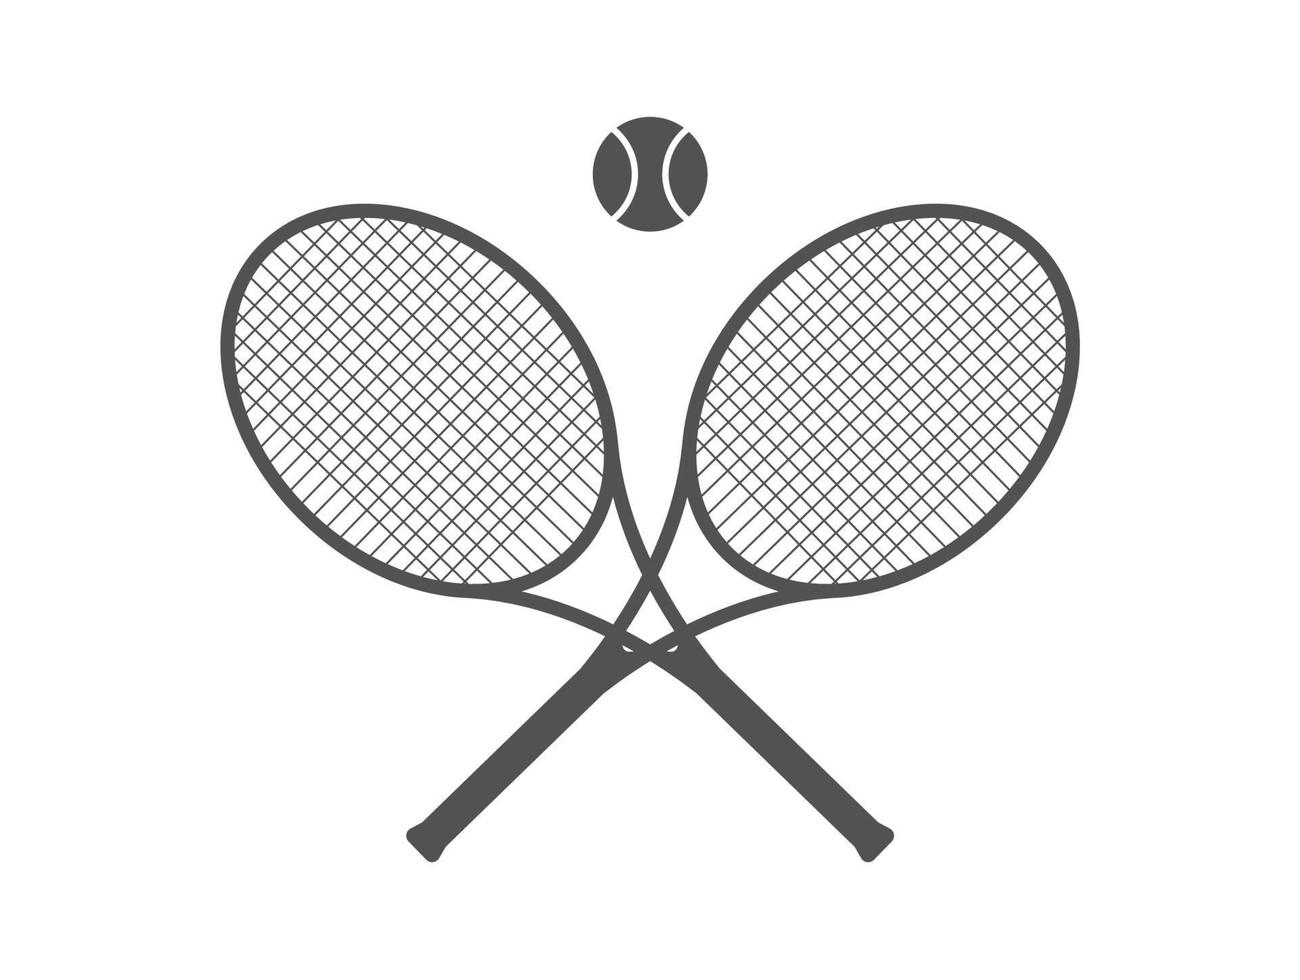 raquete de tênis isolada, ilustração vetorial vetor